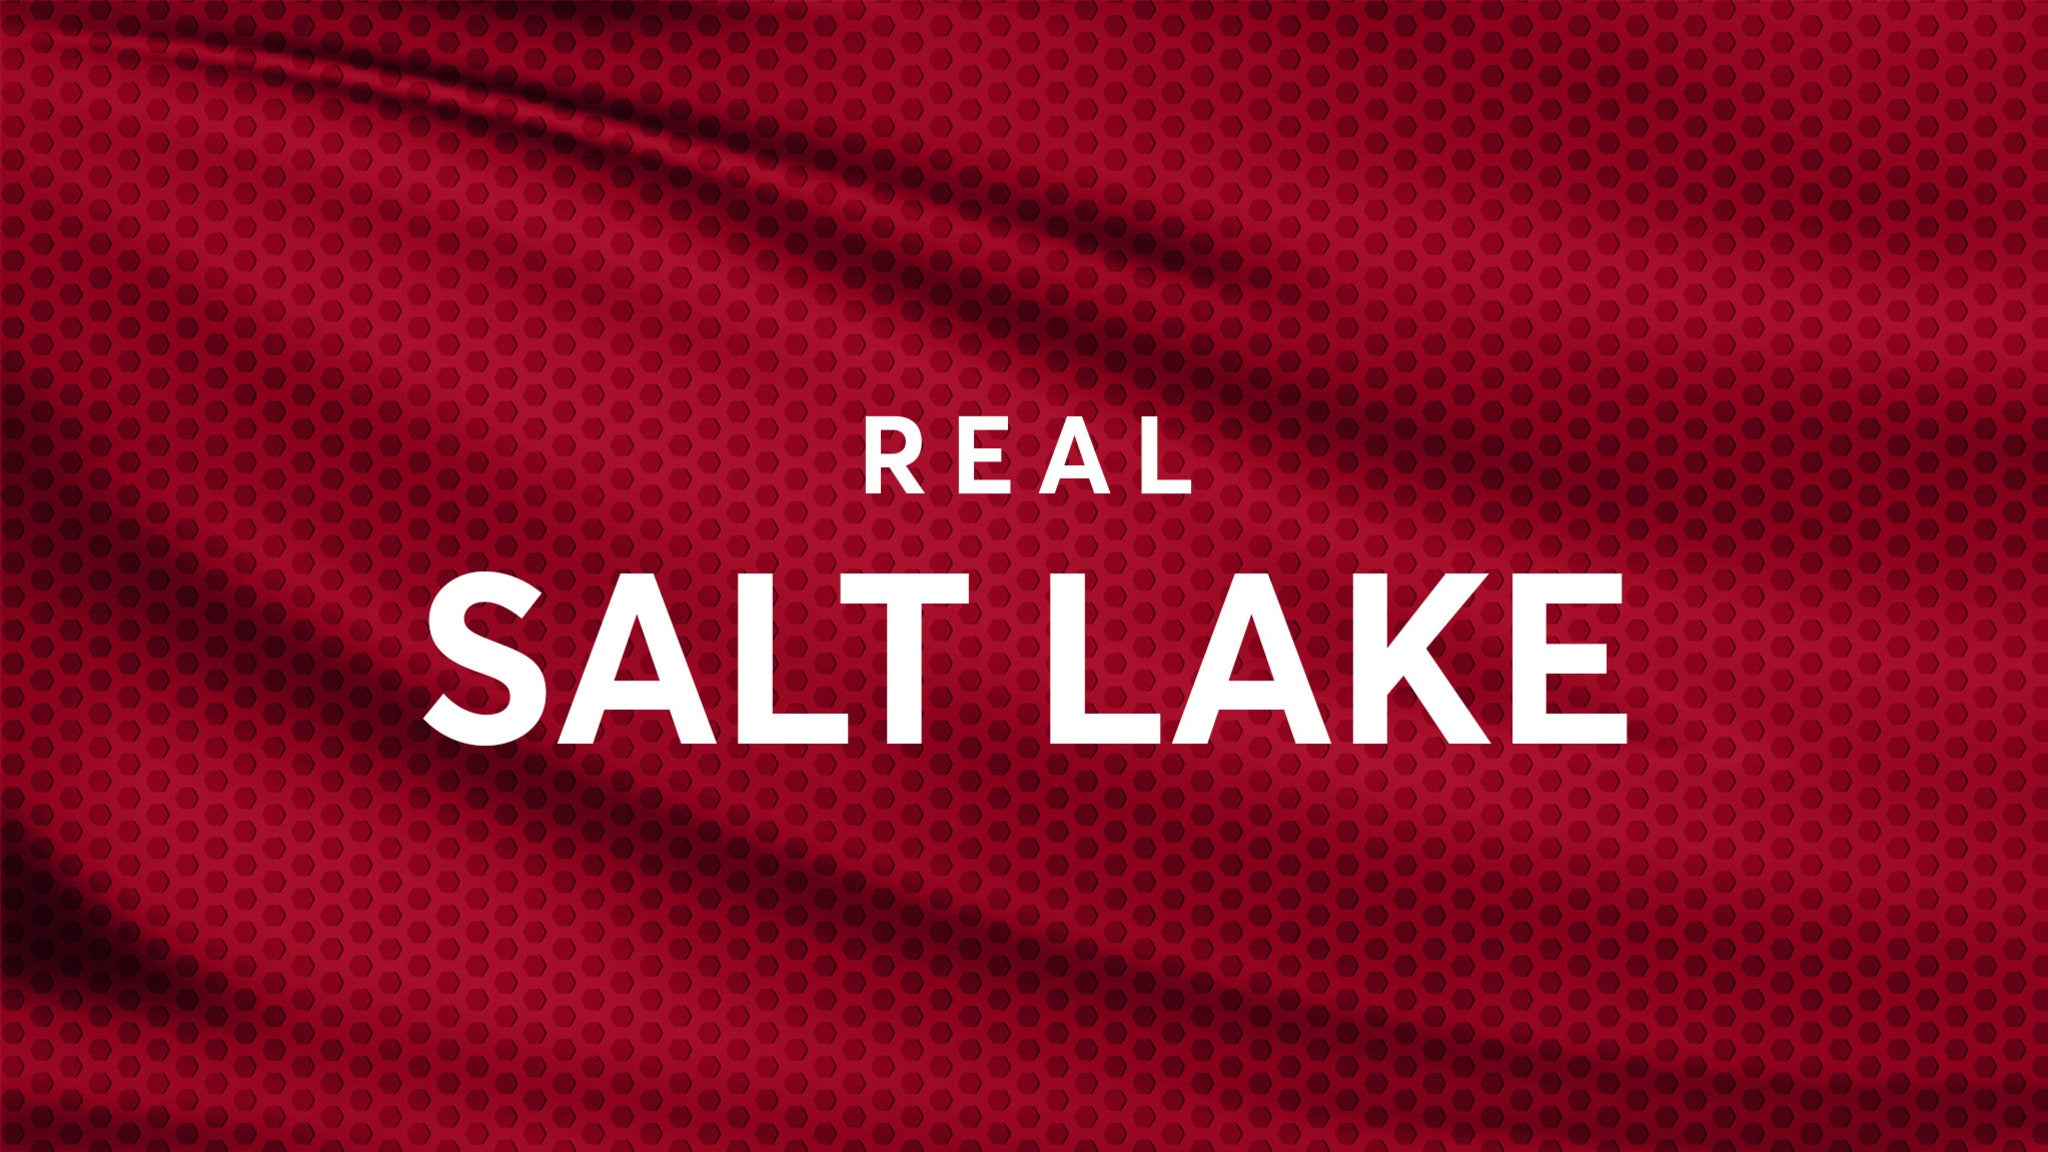 Real Salt Lake presale information on freepresalepasswords.com